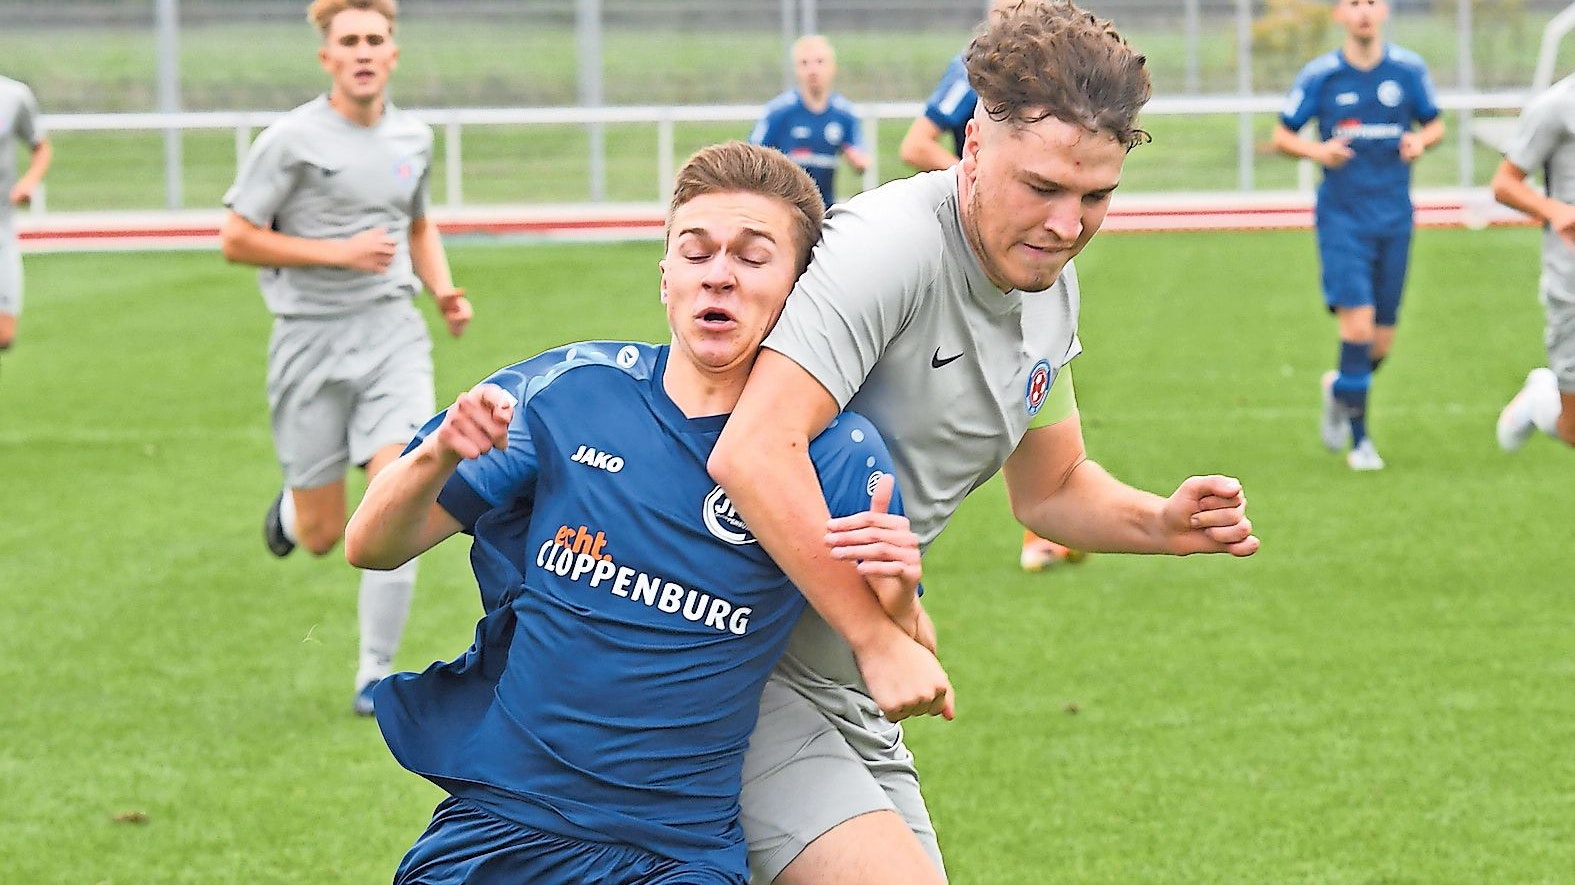 Fest im Griff: Cloppenburgs in der Niedersachsenliga spielenden U19-Fußballer (blaue Trikots) kamen zur Saisonpremiere gegen JFV Verden zu einem 6:3-Erfolg.&nbsp; Foto: Wulfers